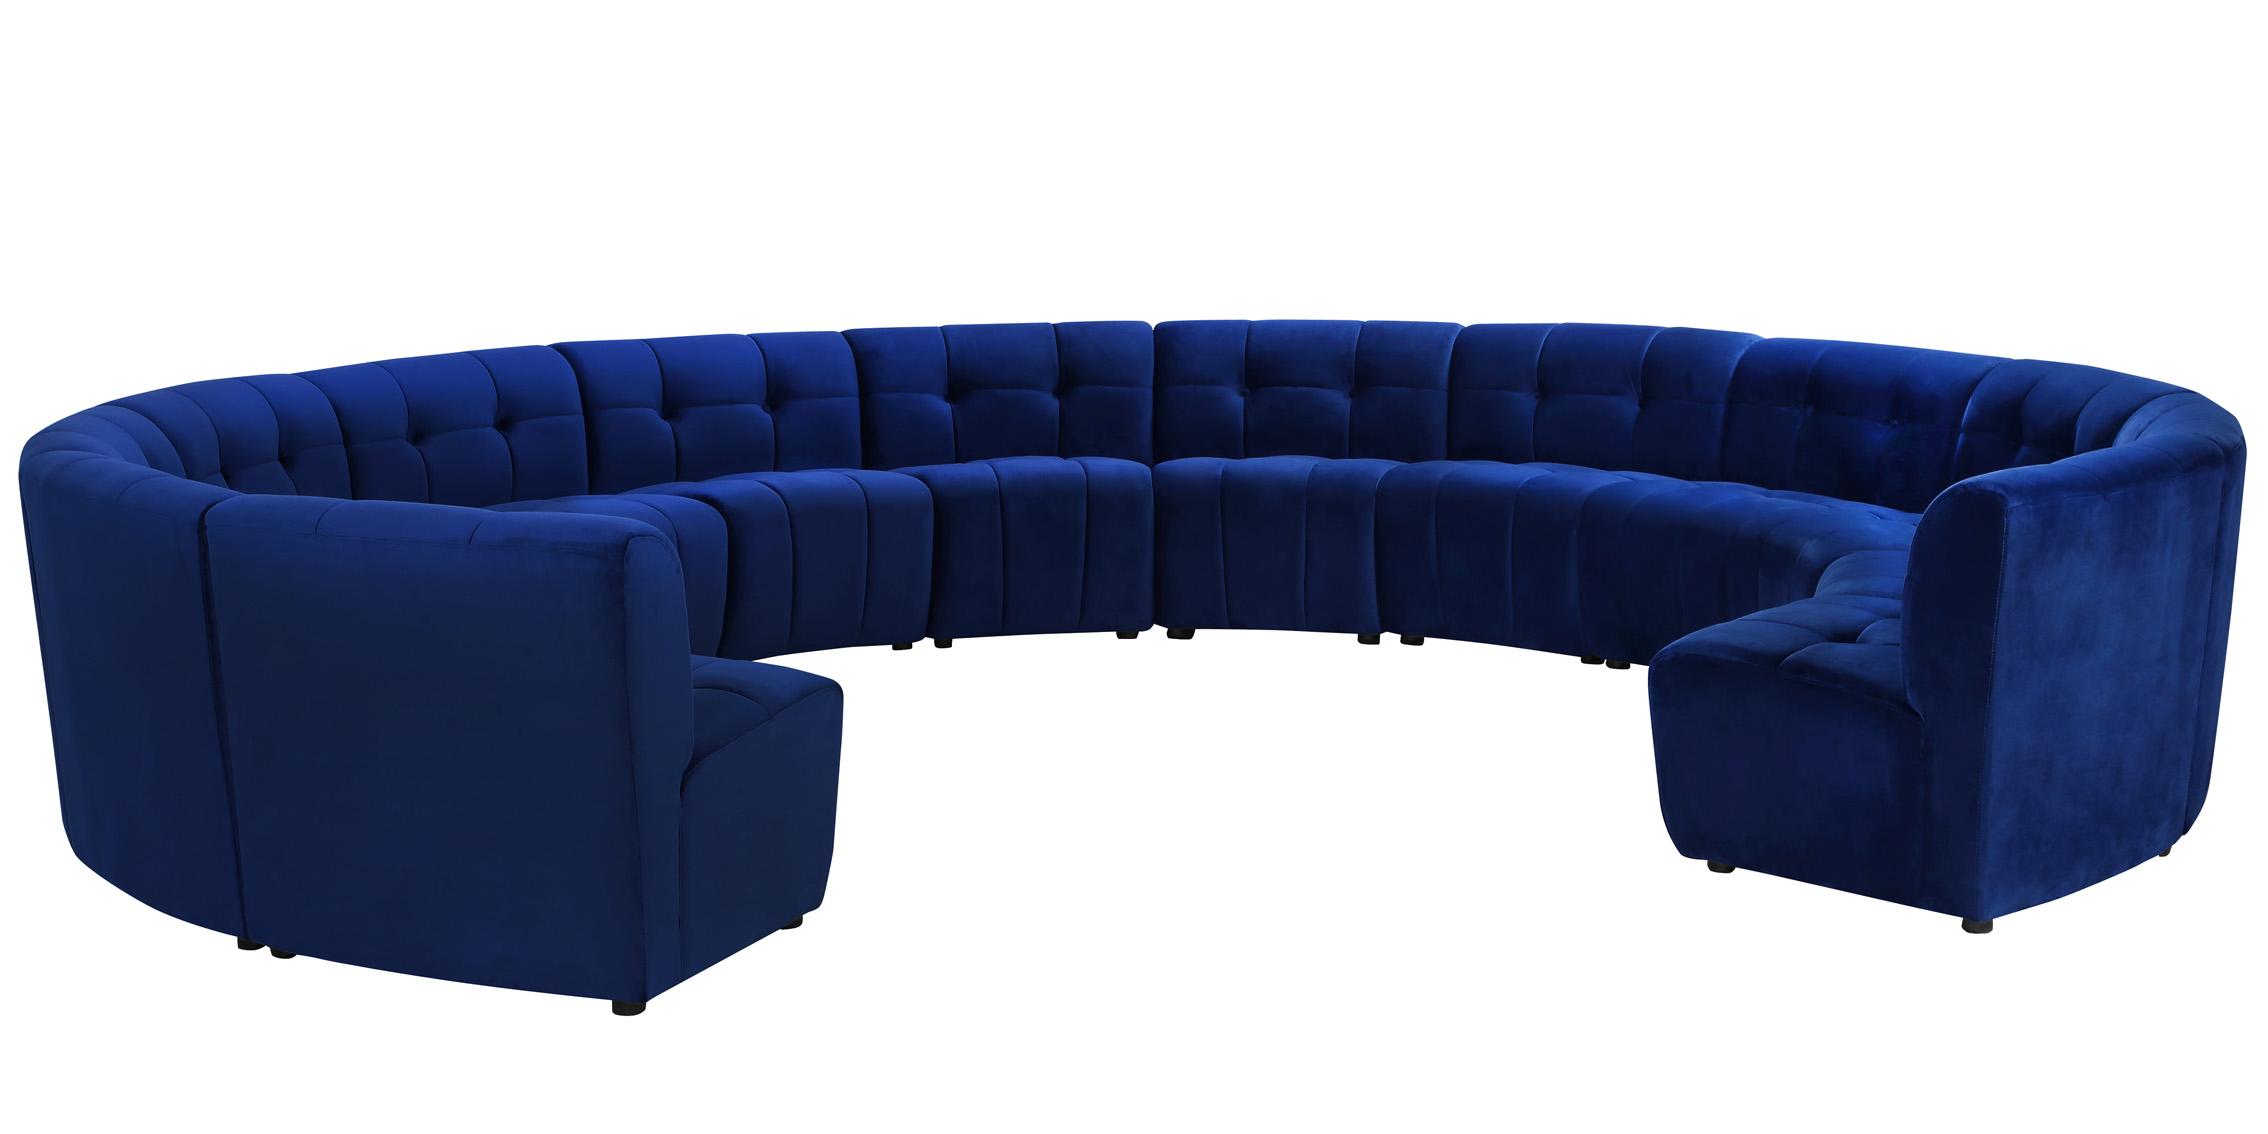 

    
645Navy-13PC Meridian Furniture Modular Sectional Sofa
